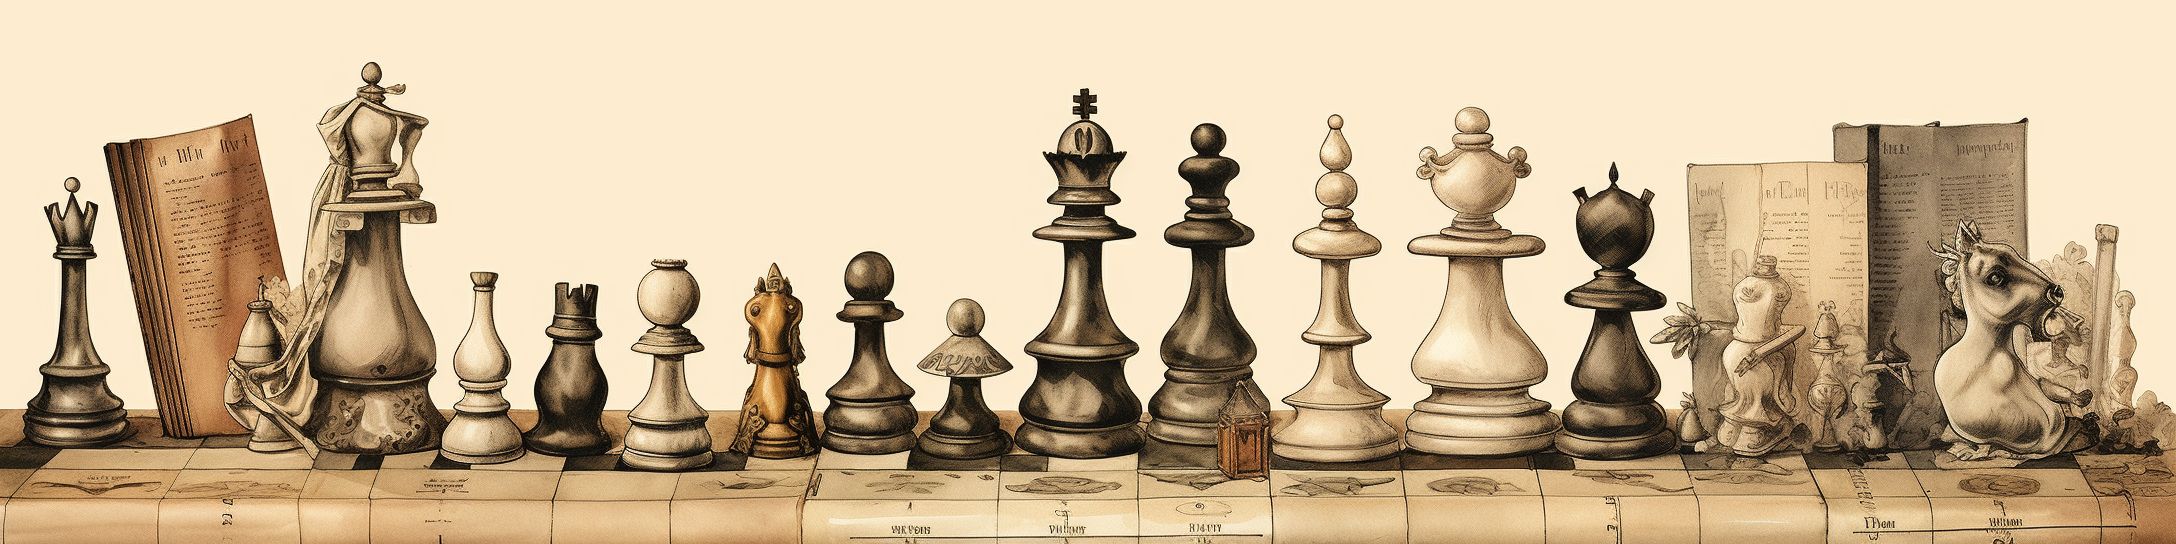 L'évolution des règles du jeu d'échecs